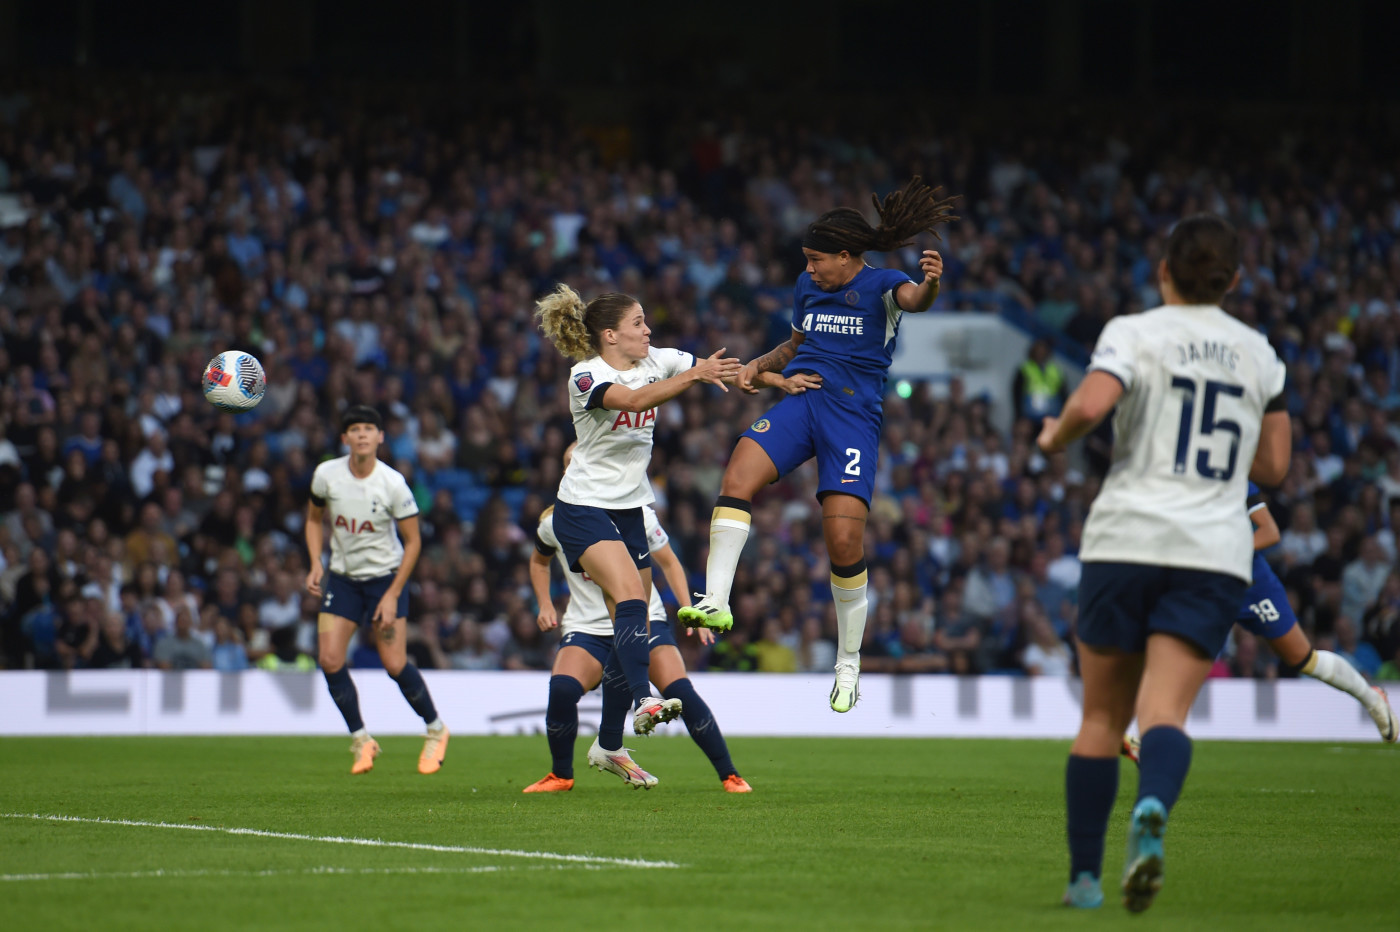 Chelsea Women 2-1 Tottenham Hotspur Women